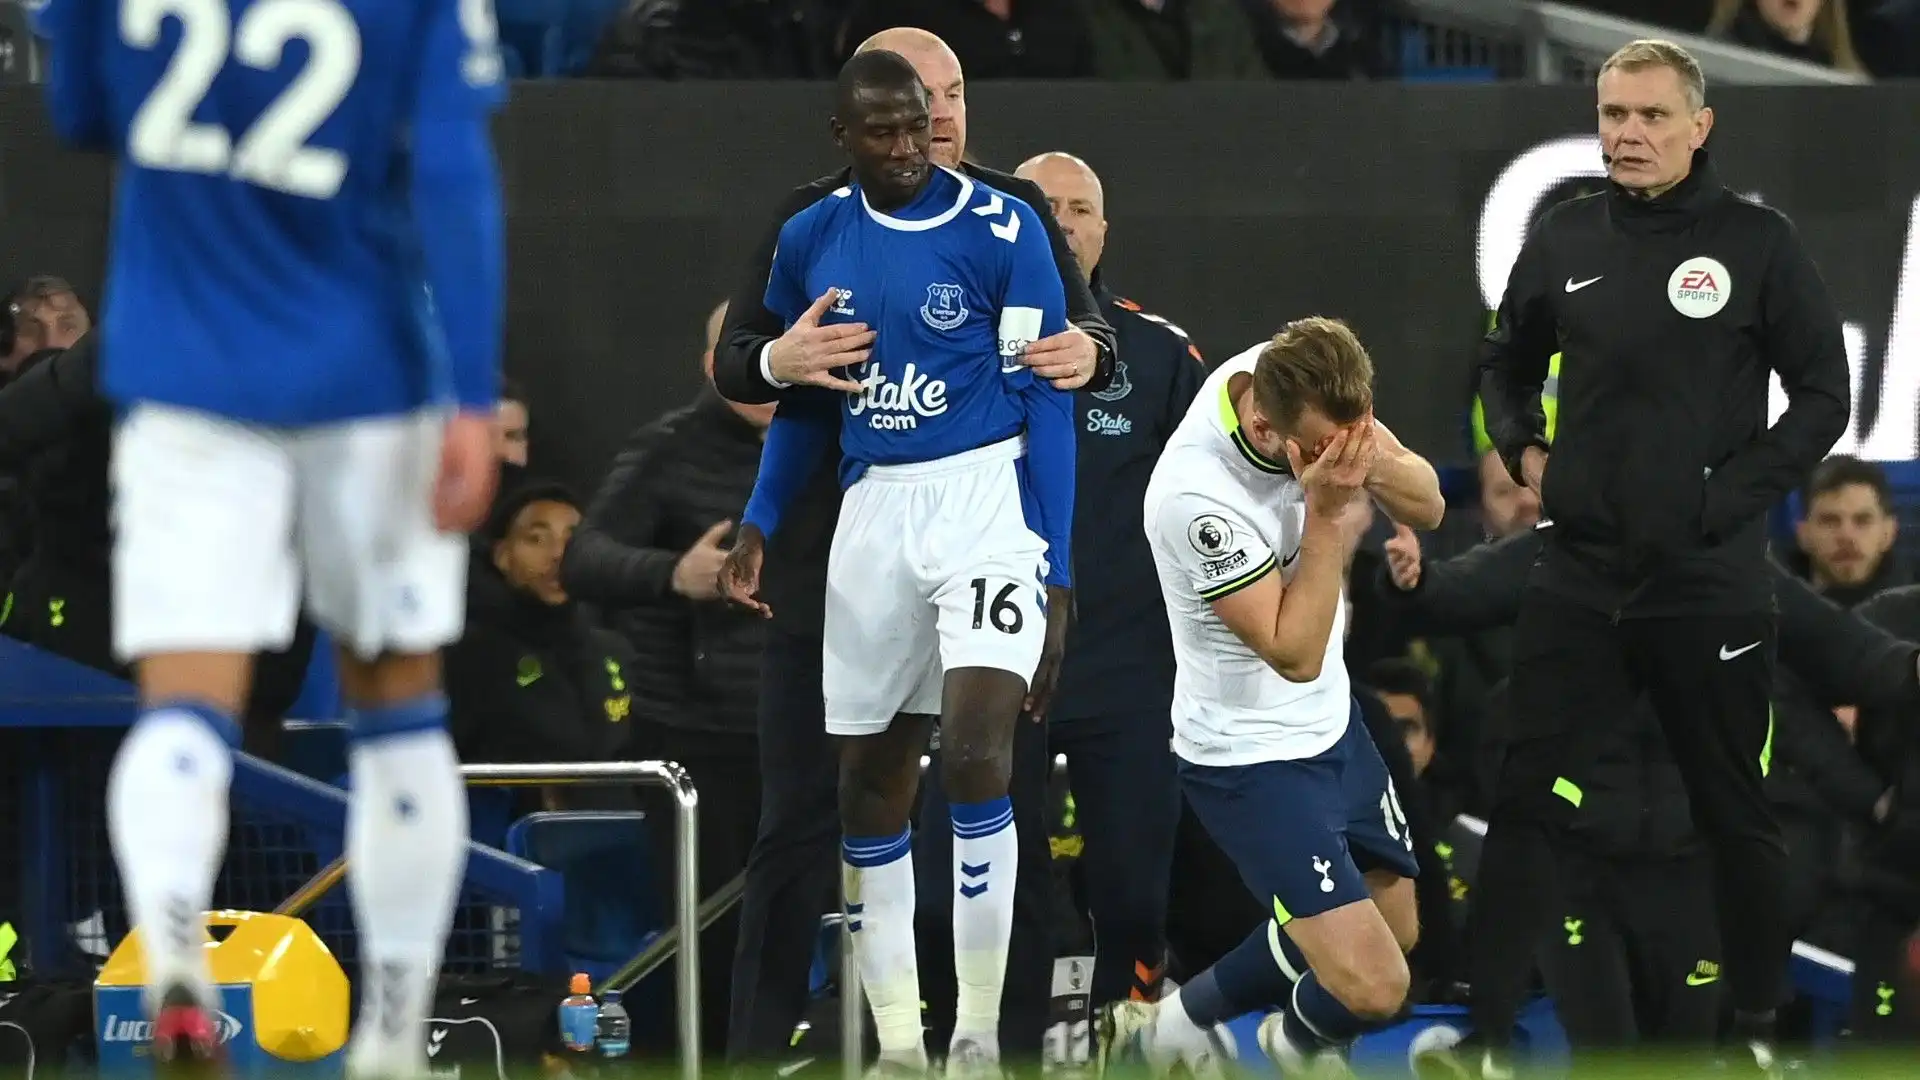 Il centrocampista dell'Everton ha colpito Harry Kane sul volto, adesso rischia una maxi squalifica